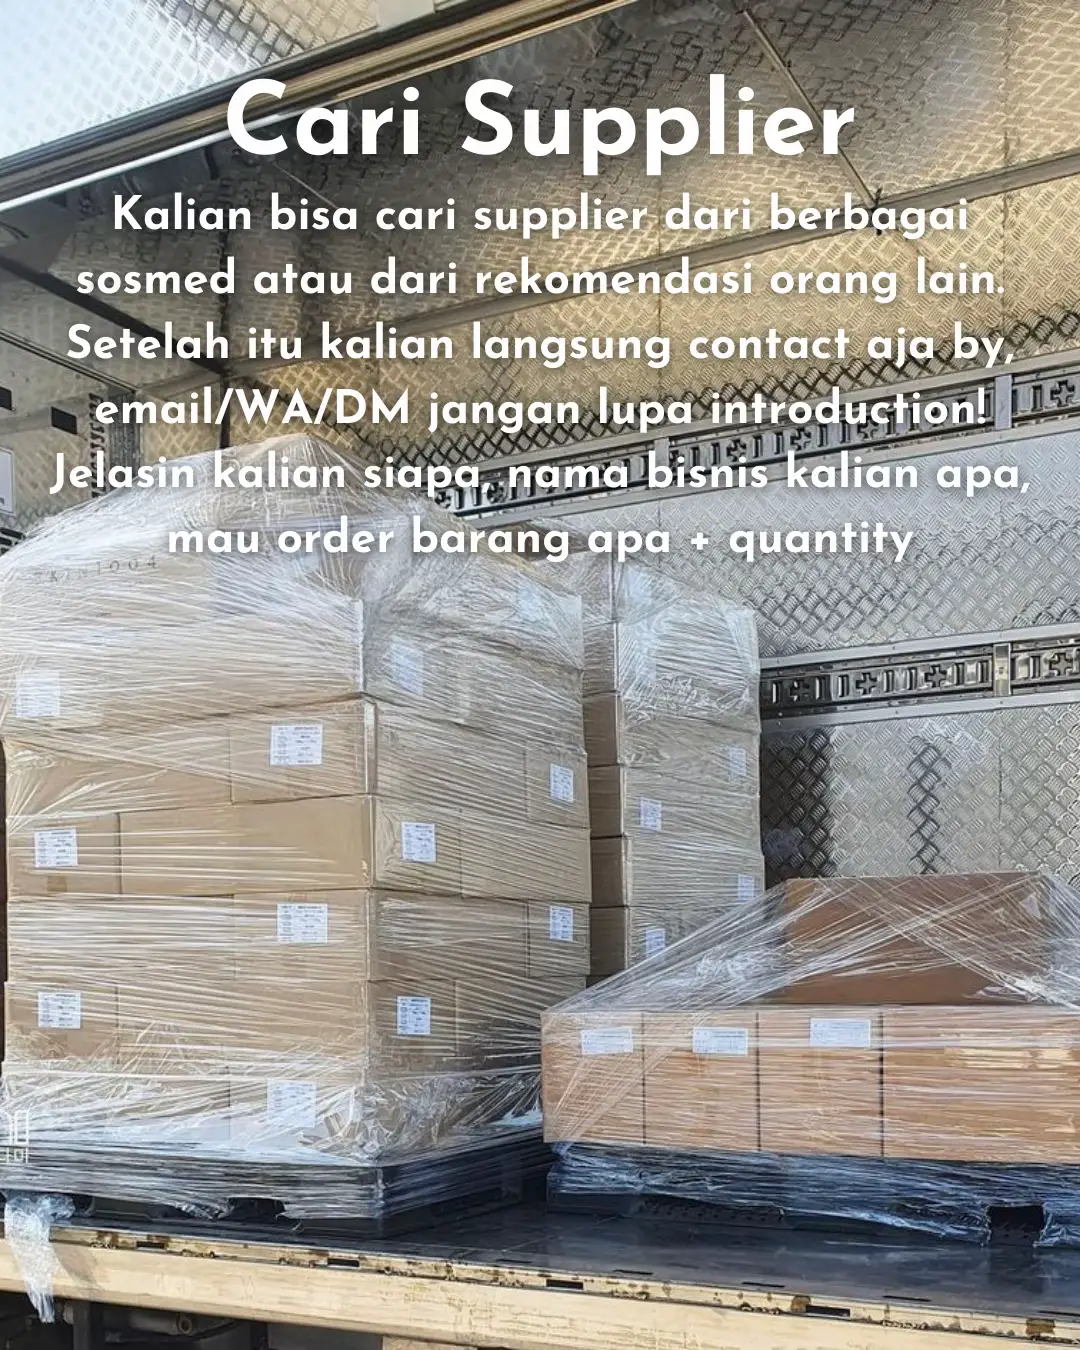 Jual BH Bra Import Merek NING DIE - Jakarta Pusat - Inbox Shop